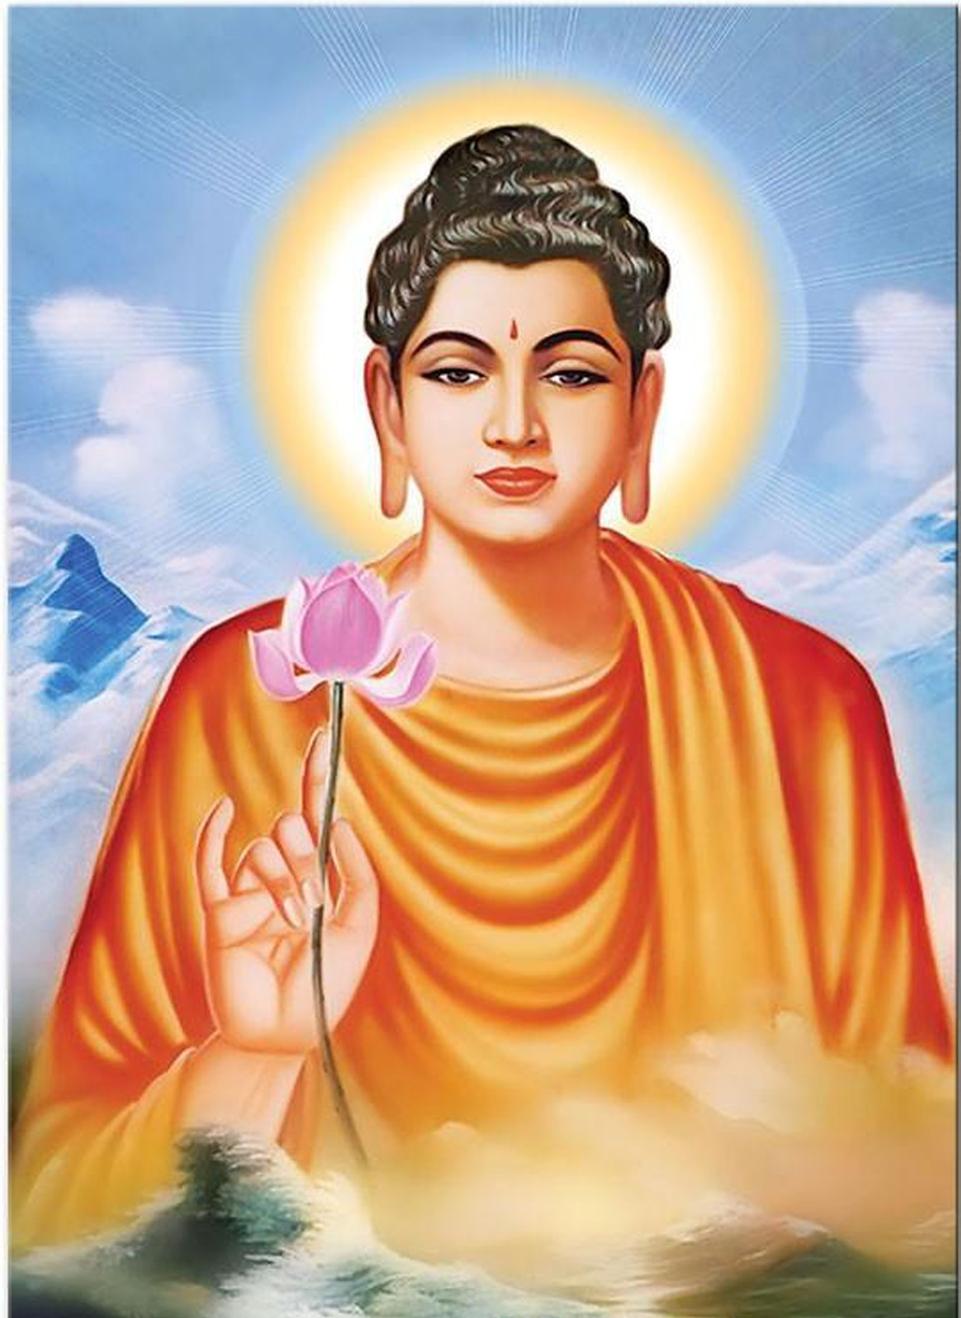 Phật giáo cho rằng Phật là chúng sinh đã được giác ngộ, còn chúng sinh là Phật chưa giác ngộ.